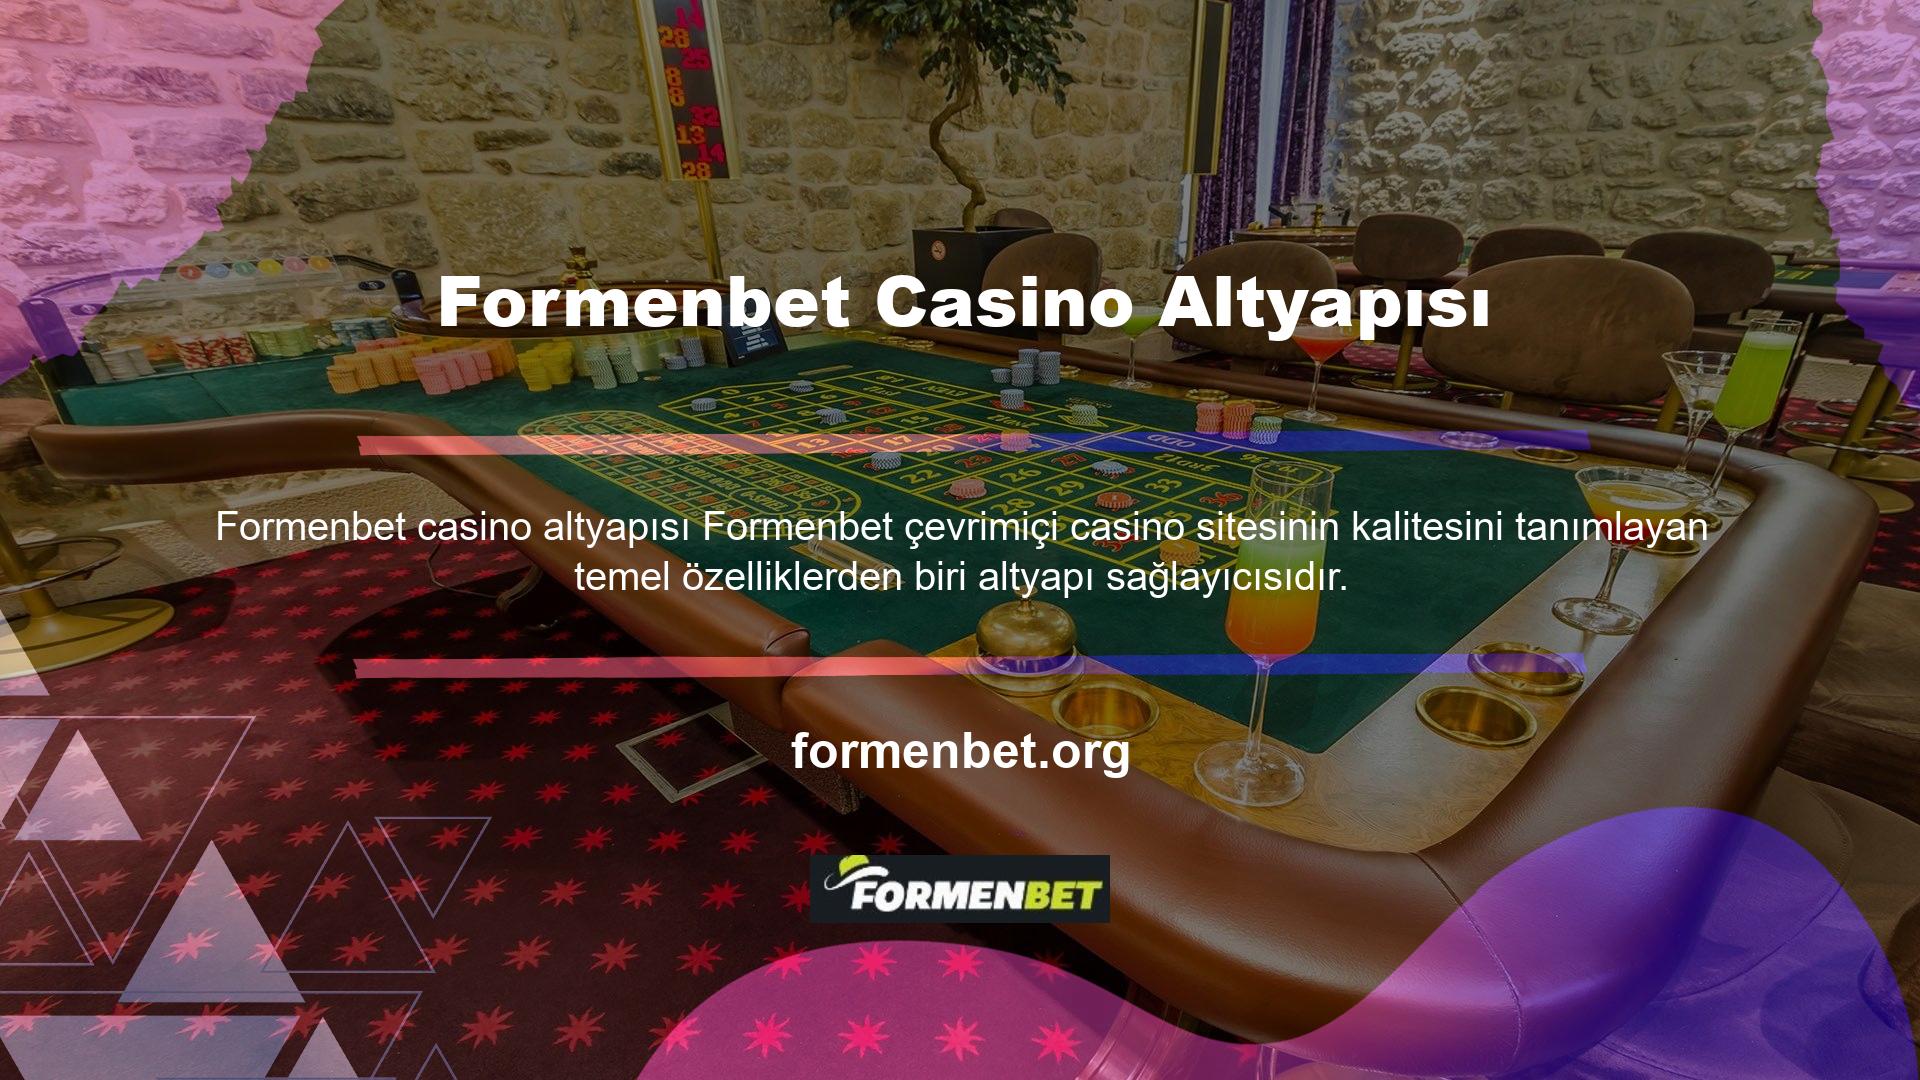 Formenbet, çeşitli oyun sağlayıcıların casino oyunlarını içerir